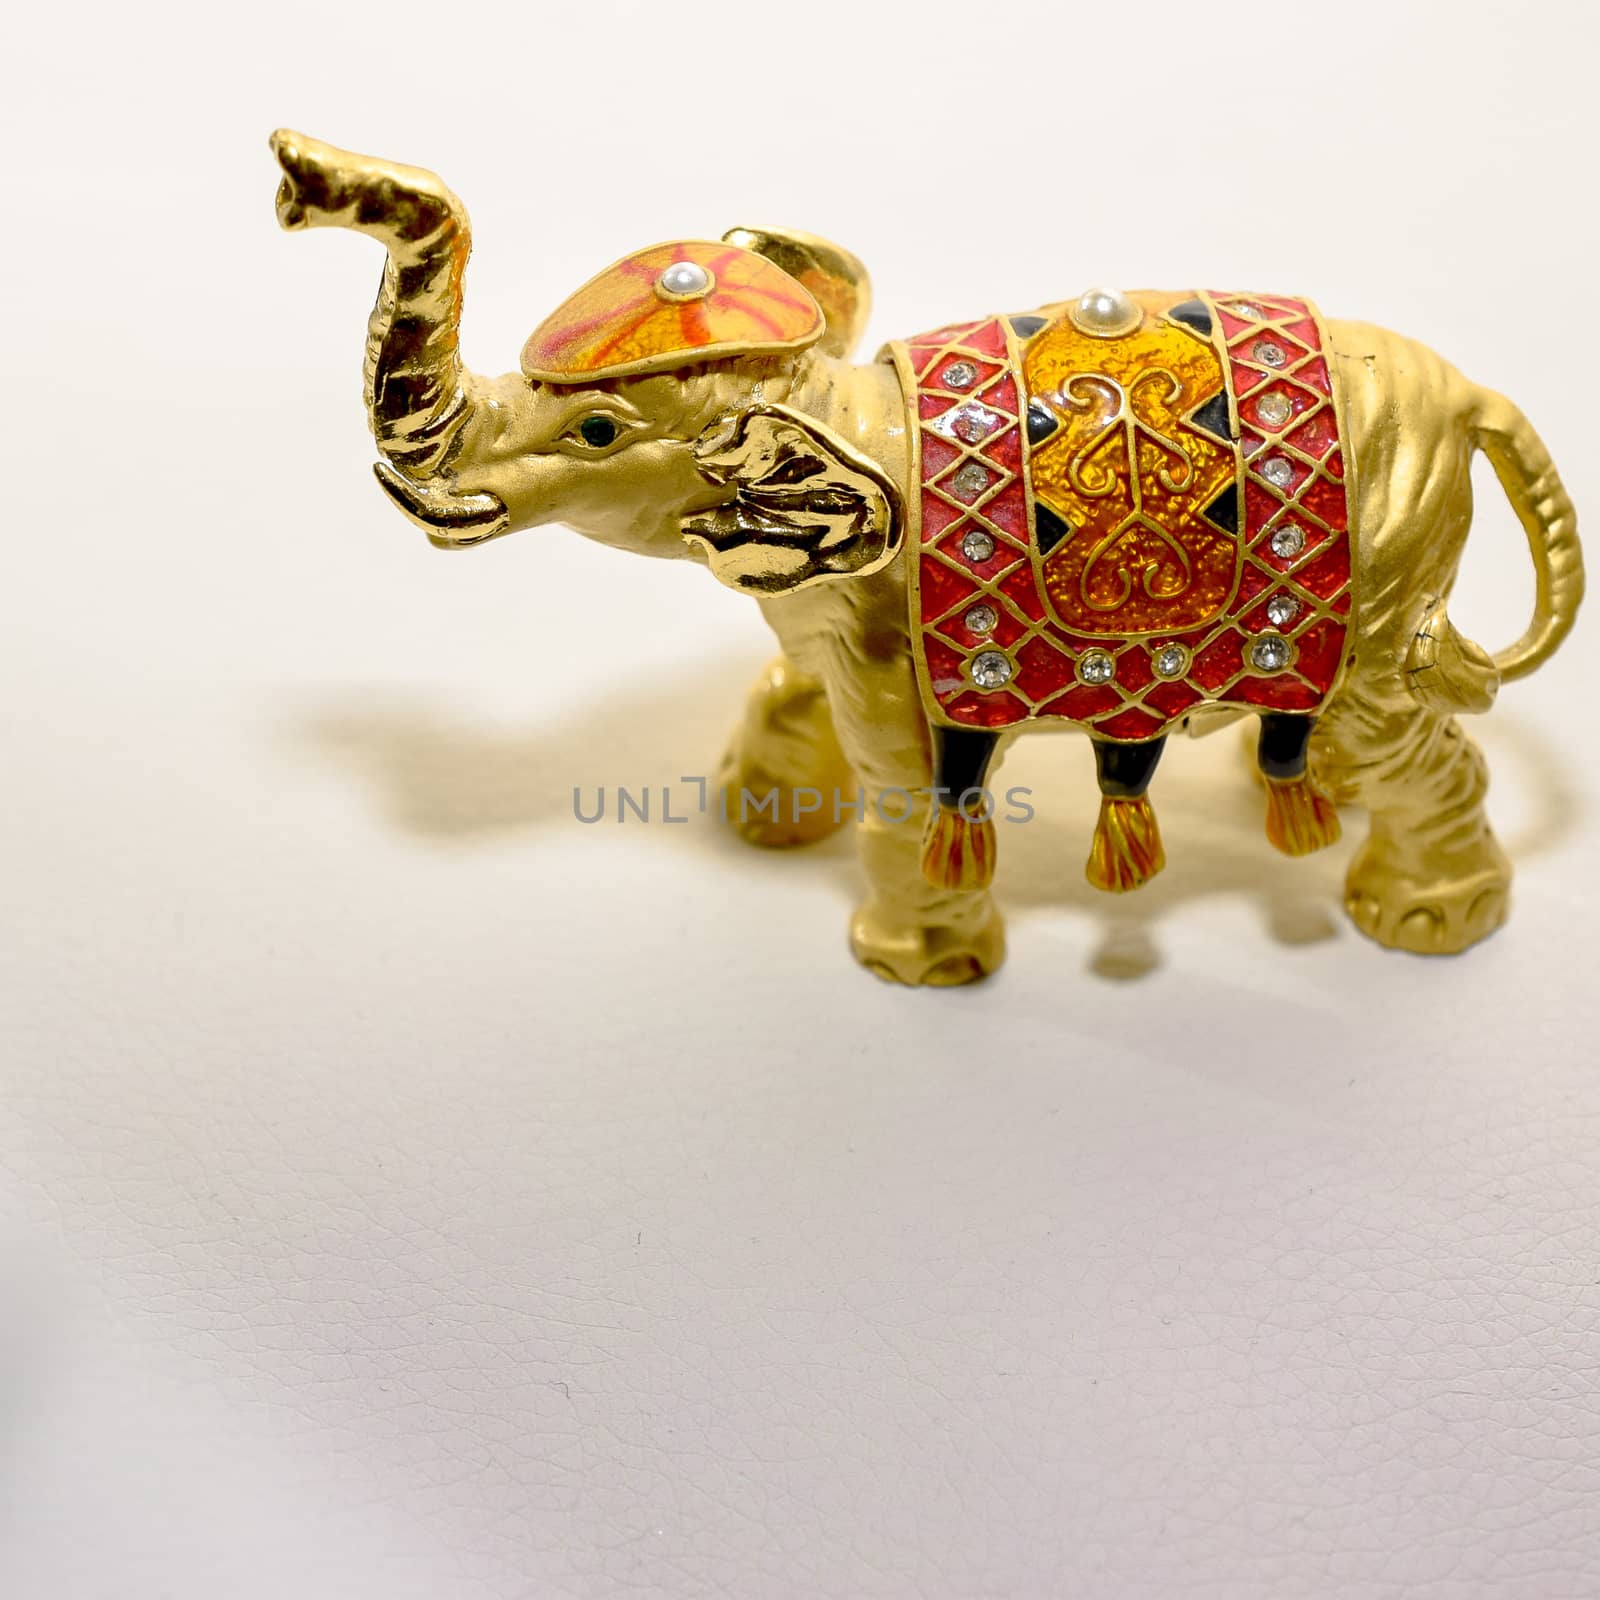 miniature figurine elephant made of semi-precious materials by alexandr_sorokin